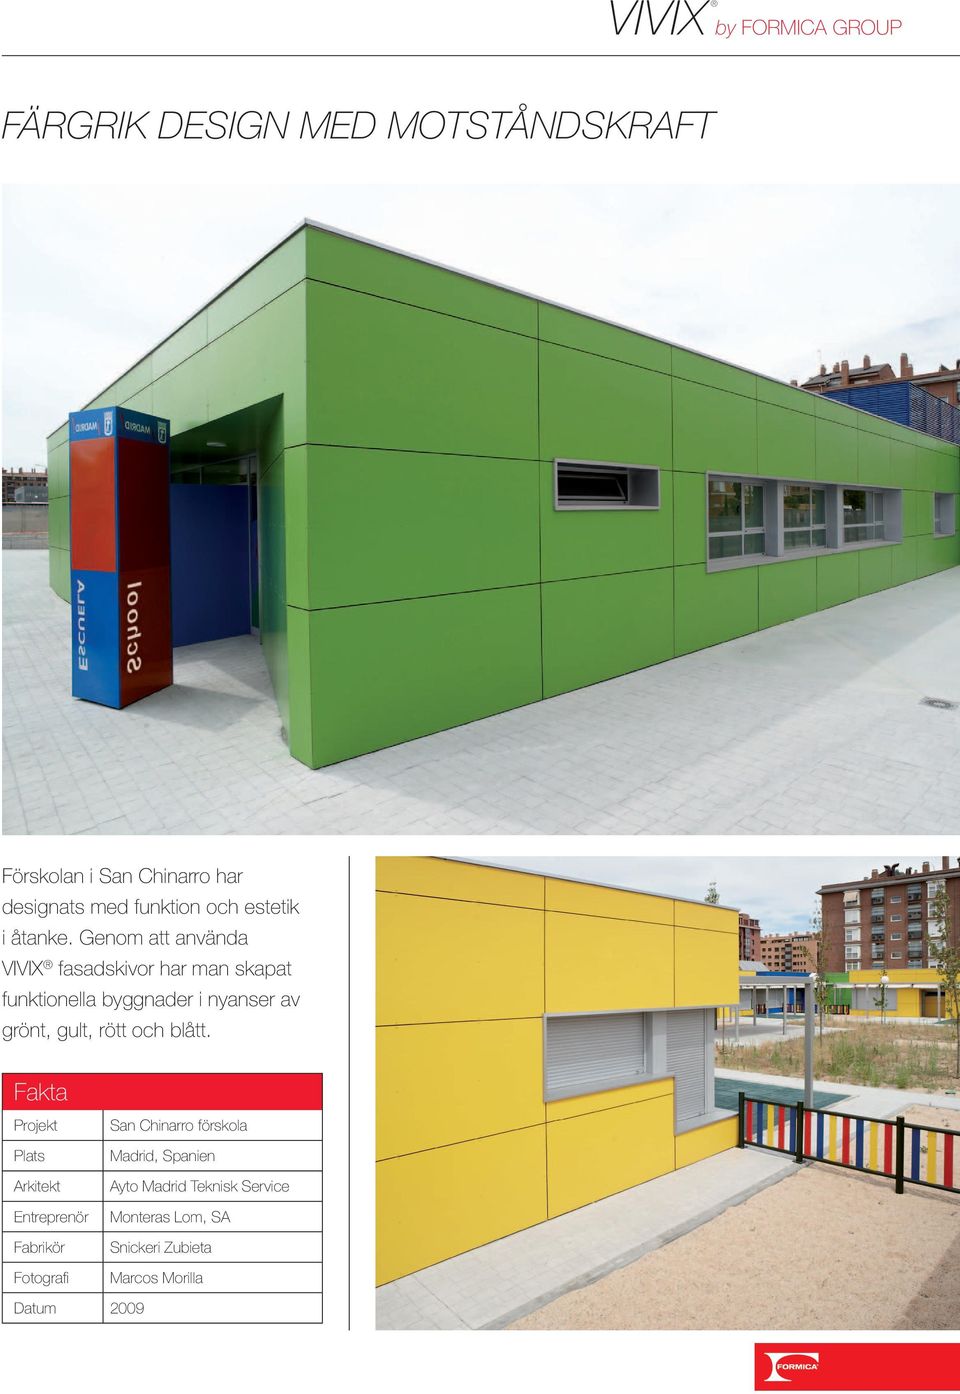 Genom att använda VIVIX fasadskivor har man skapat funktionella byggnader i nyanser av grönt, gult, rött